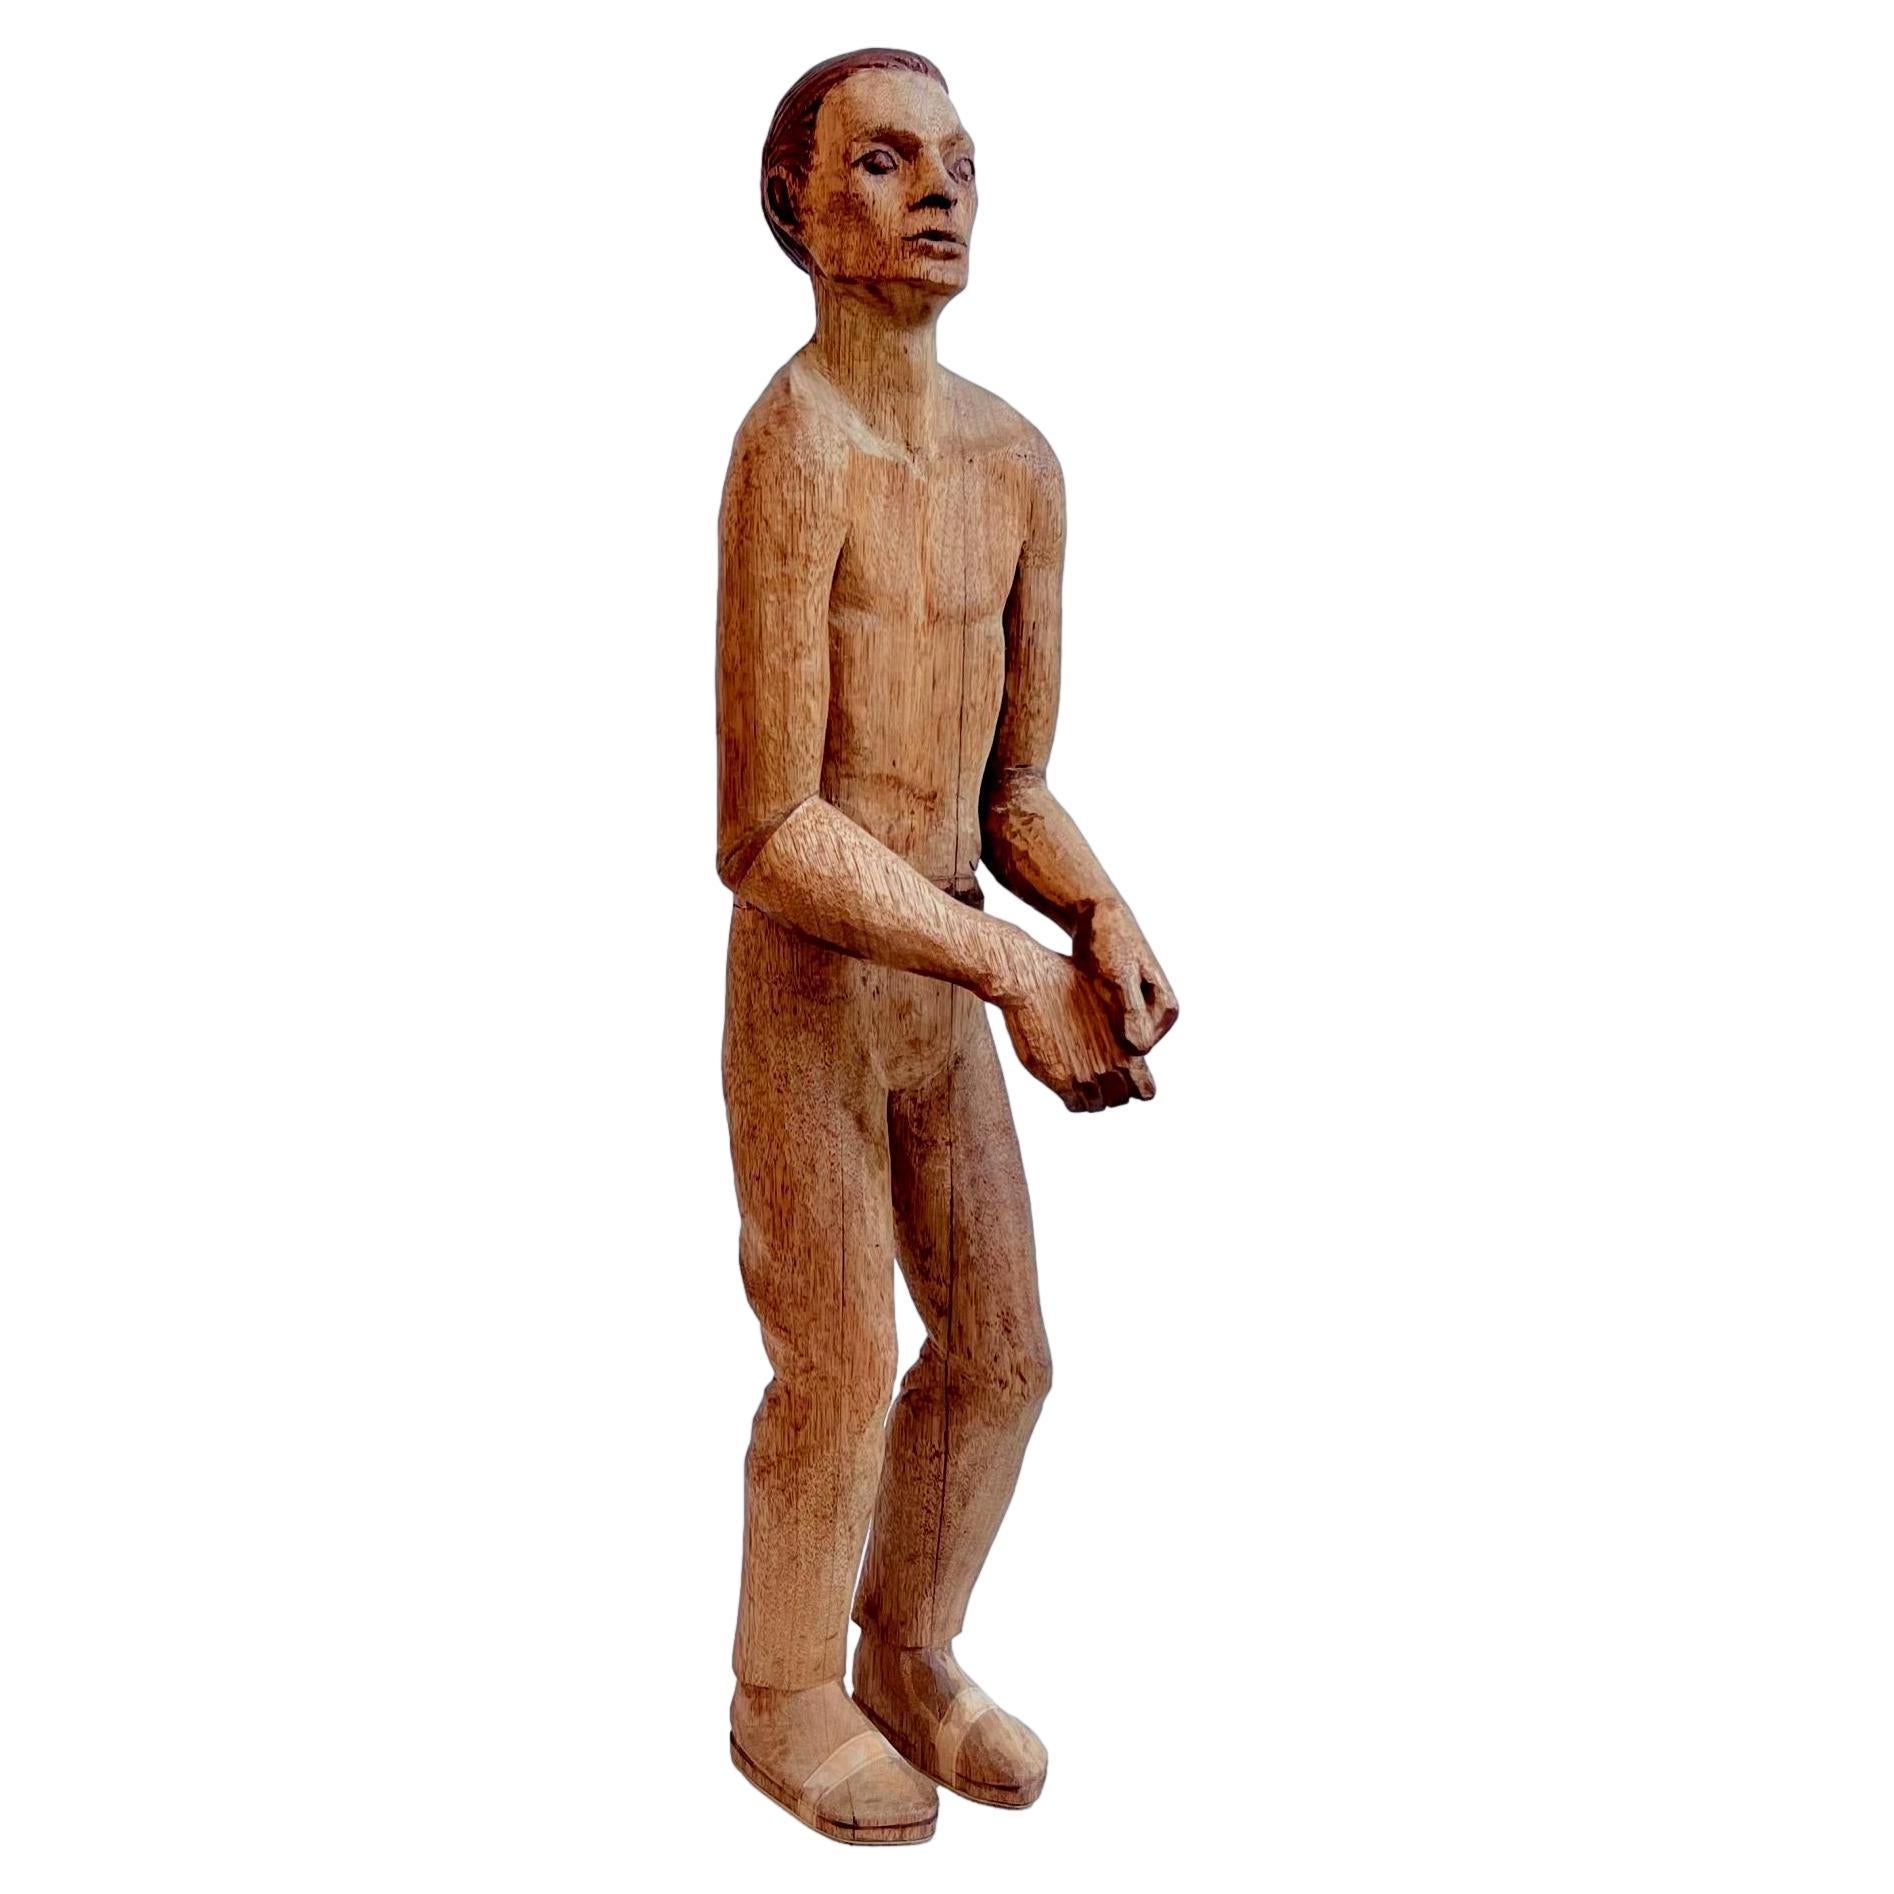 Antike männliche Volkskunst-Figur aus Holz, frühes 20. Jahrhundert, USA